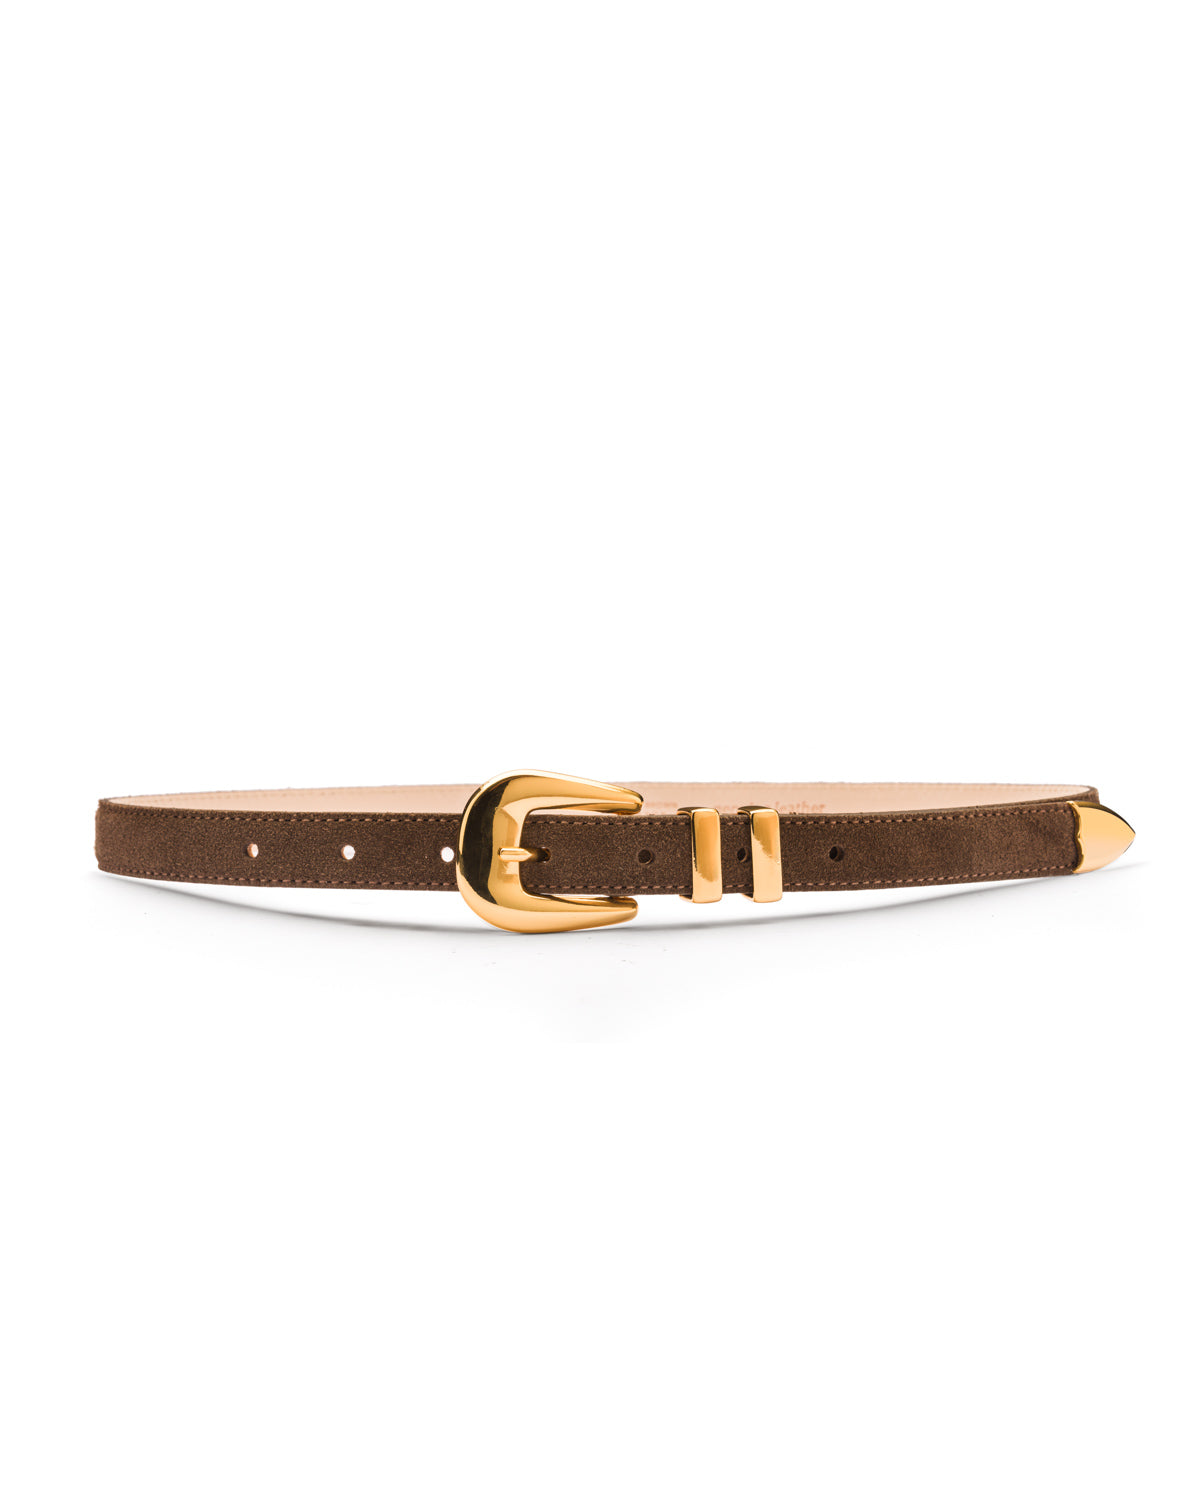 Sofia slim brown suede western waist belt